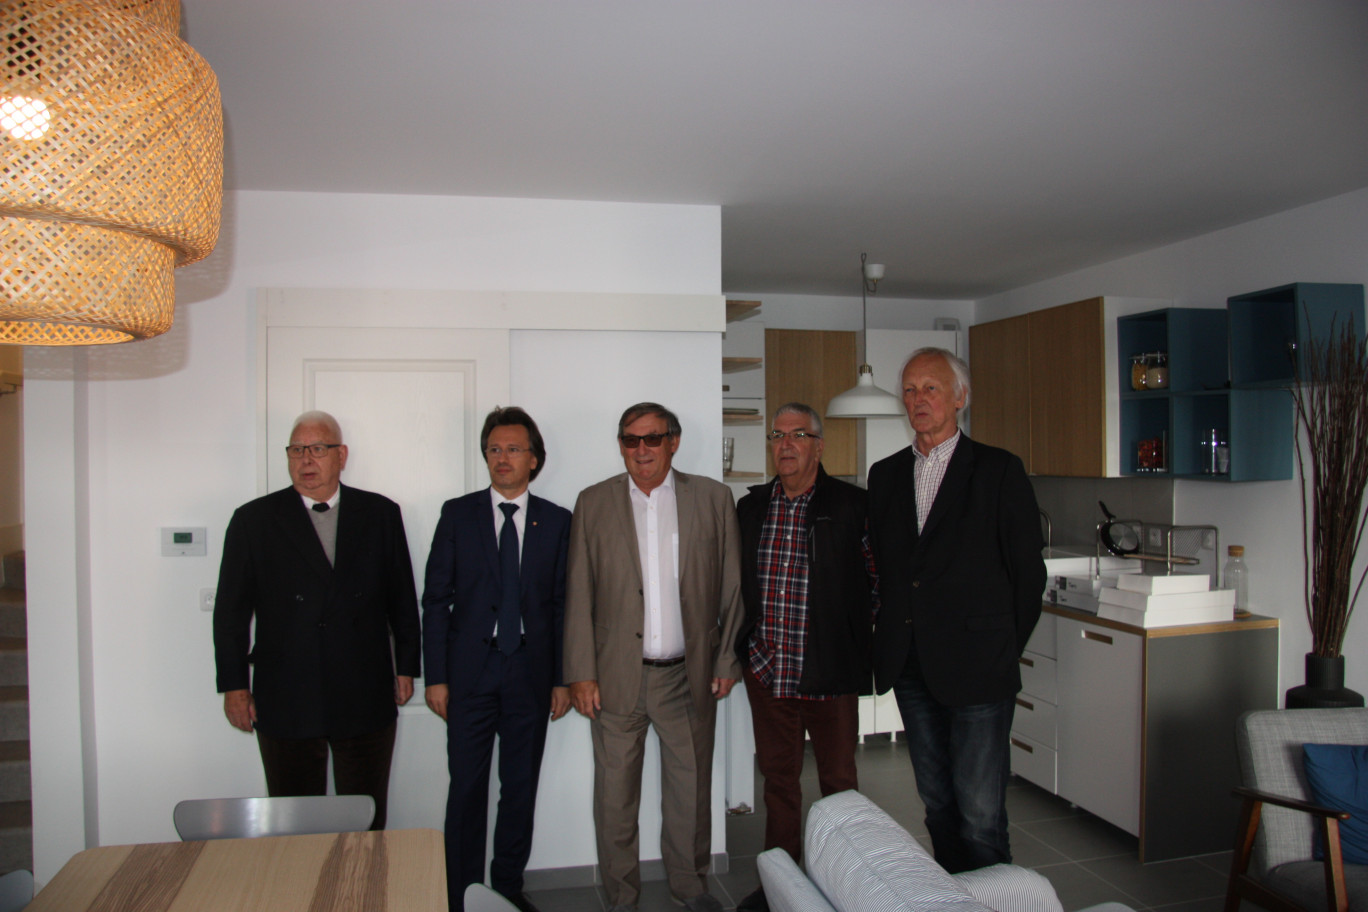 Lors de la visite d’un logement témoin par M. Emmanuel Agius, premier adjoint au maire de Calais (2è en partant de la gauche), entouré par des administrateurs de TOH.